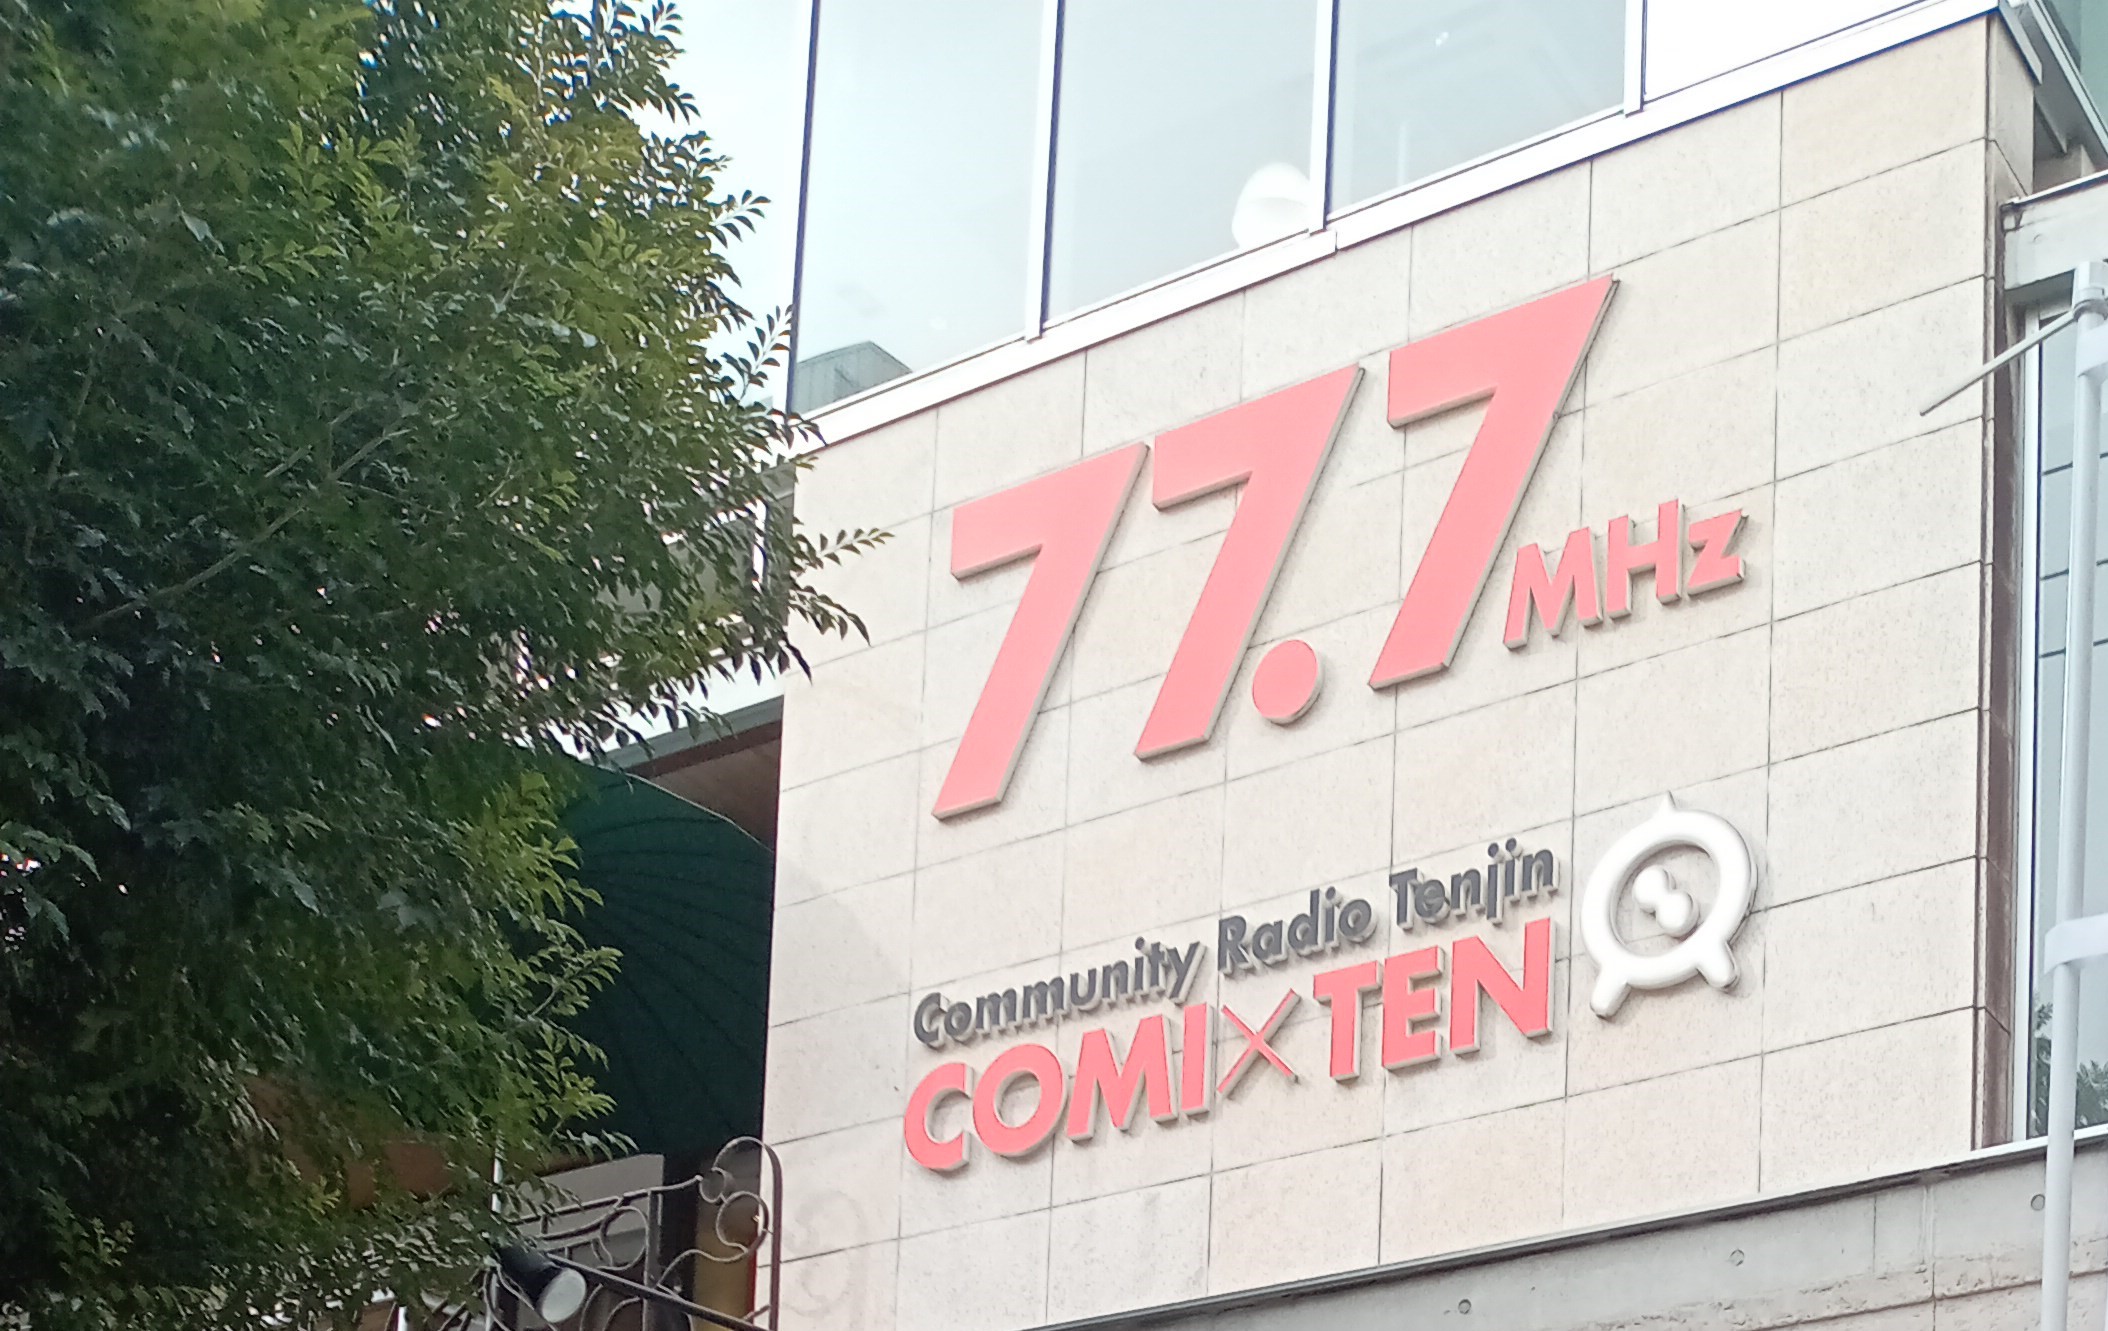 【メディア】2021.02.03|FMラジオ放送局『COMI×TEN』に弊社代表がゲスト出演しました